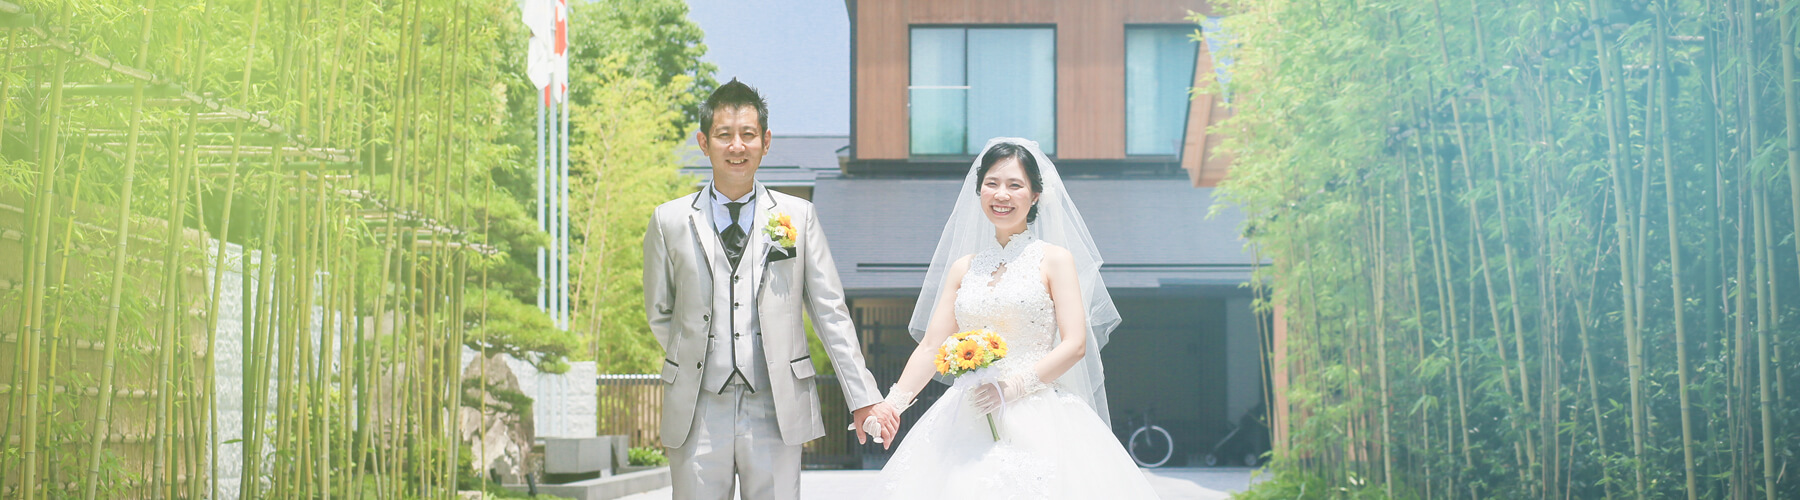 フォーシーズンズホテル京都の結婚式写真 京都の結婚式写真 Mpw By Hi Nge Inc